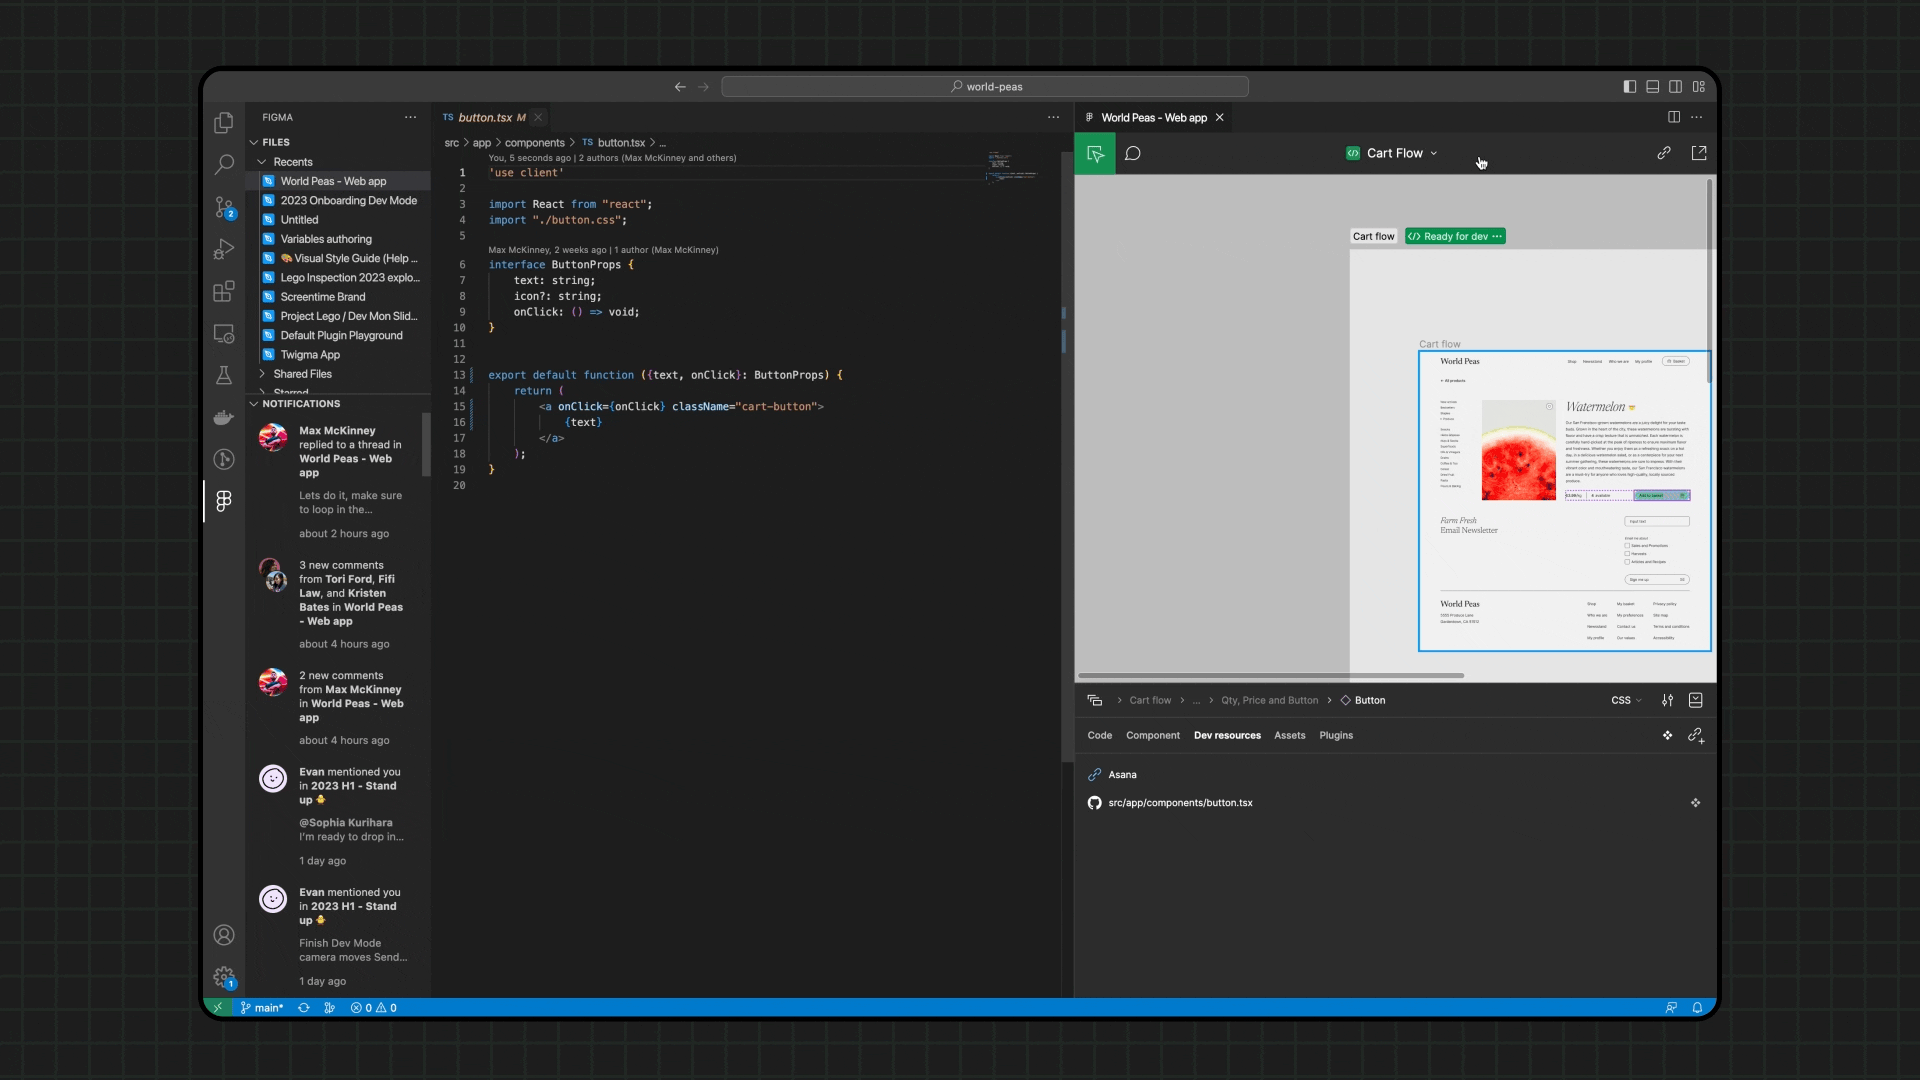 GIF contendo um exemplo de como utilizar a extensão do Figma no VS Code.